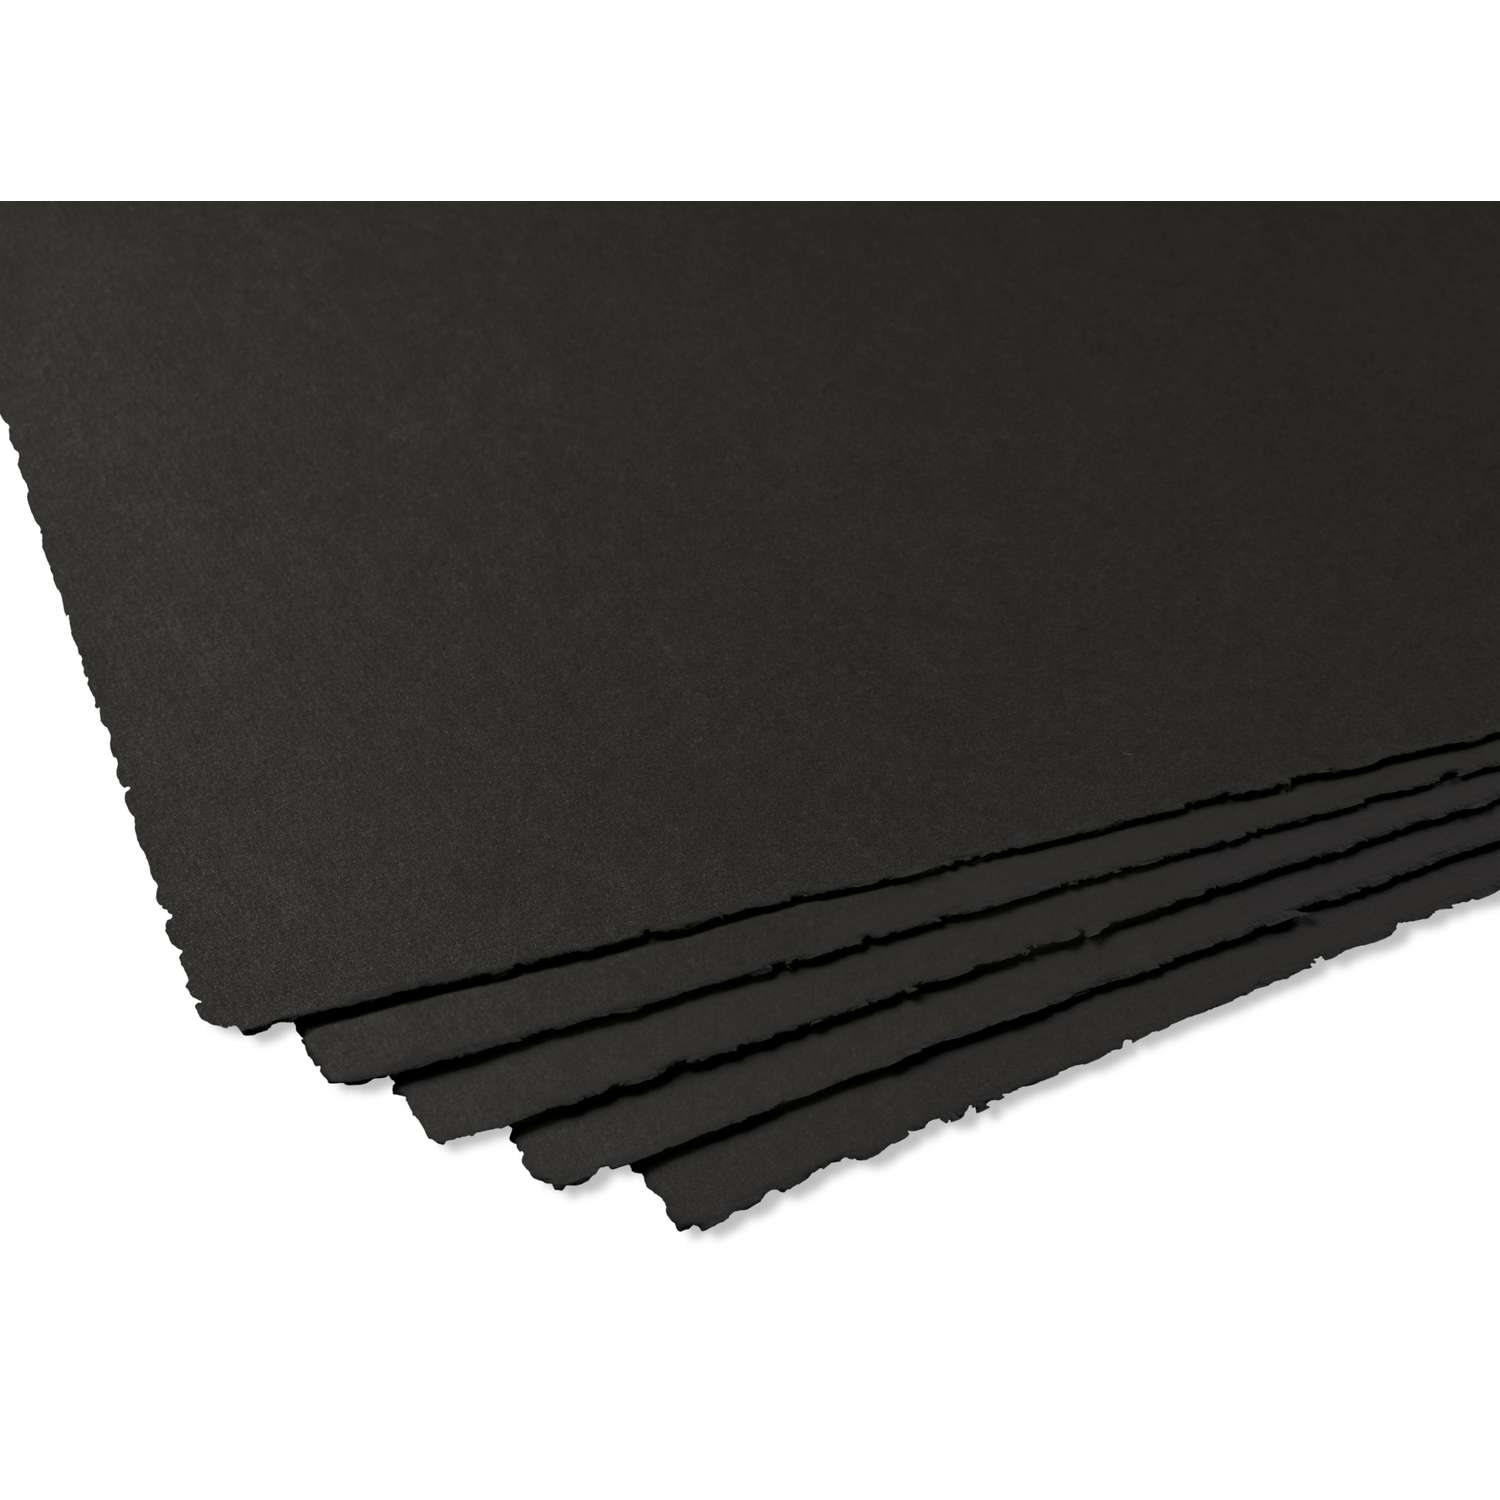 Clairefontaine Fontaine - papier aquarelle - feuille noire 100